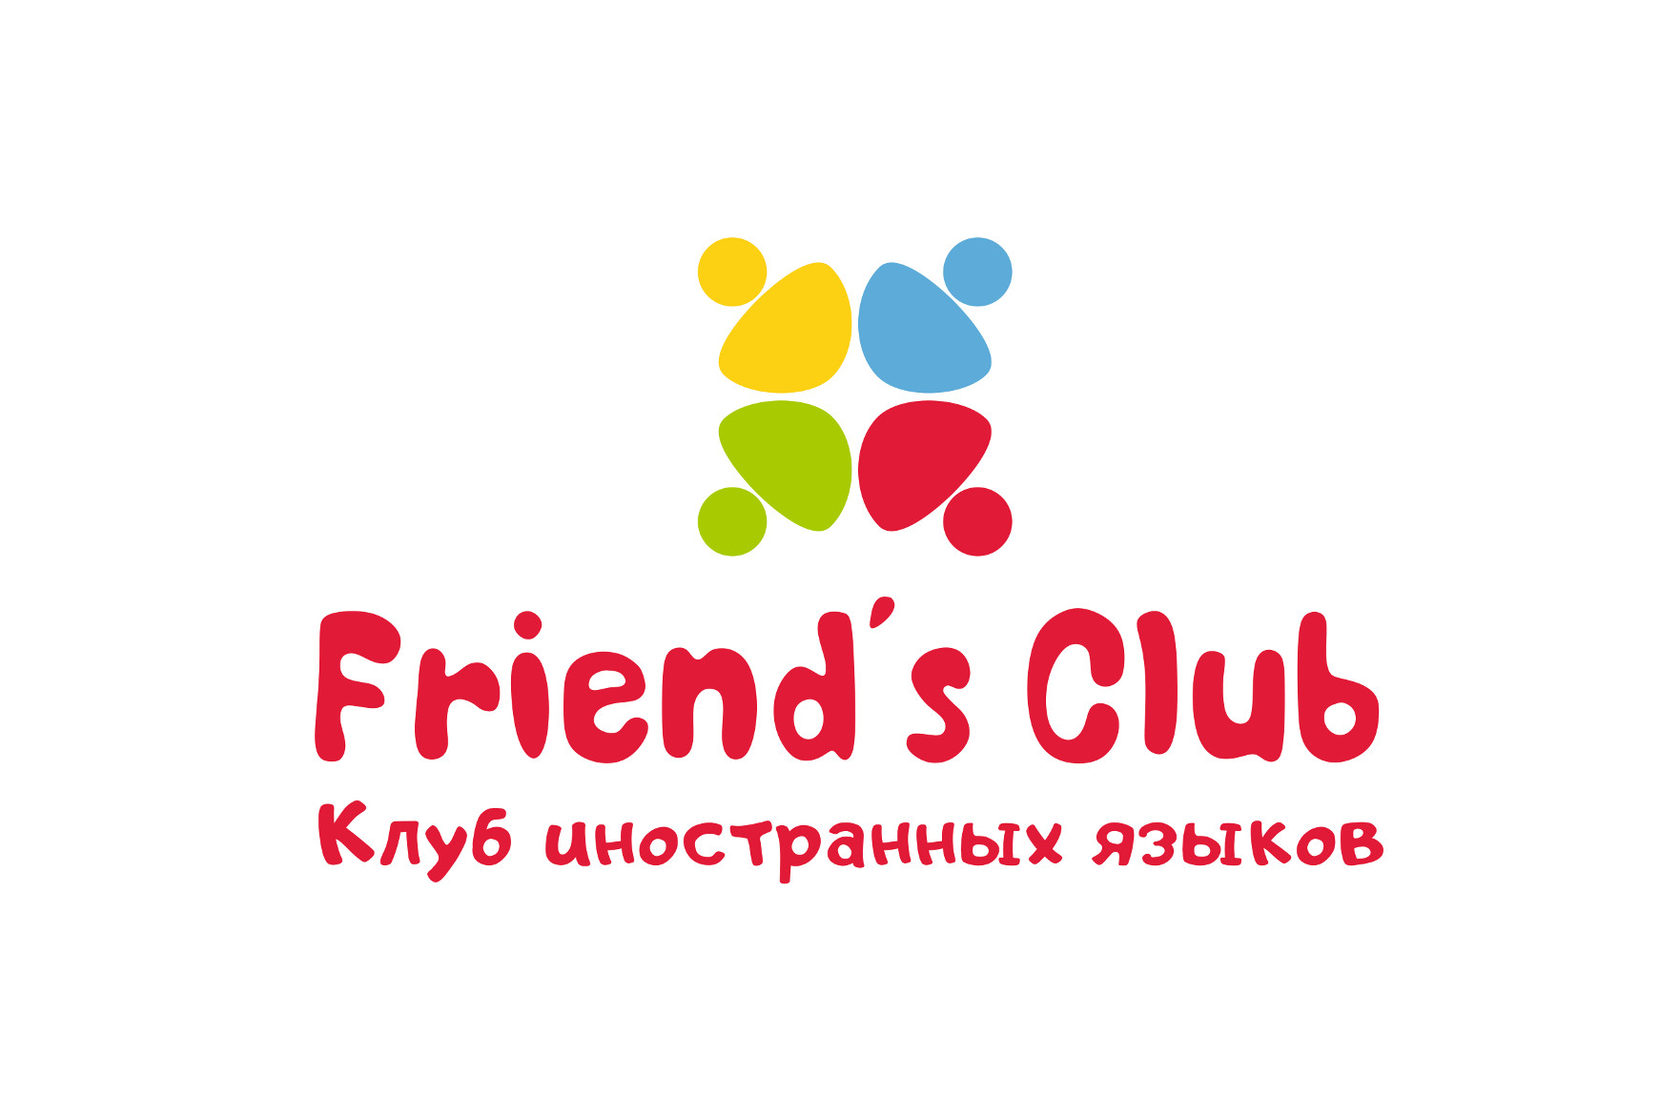 Friends Club. Friends Club английский язык. Французский клуб. Обнинск Welcome. Сайт клуб друзей